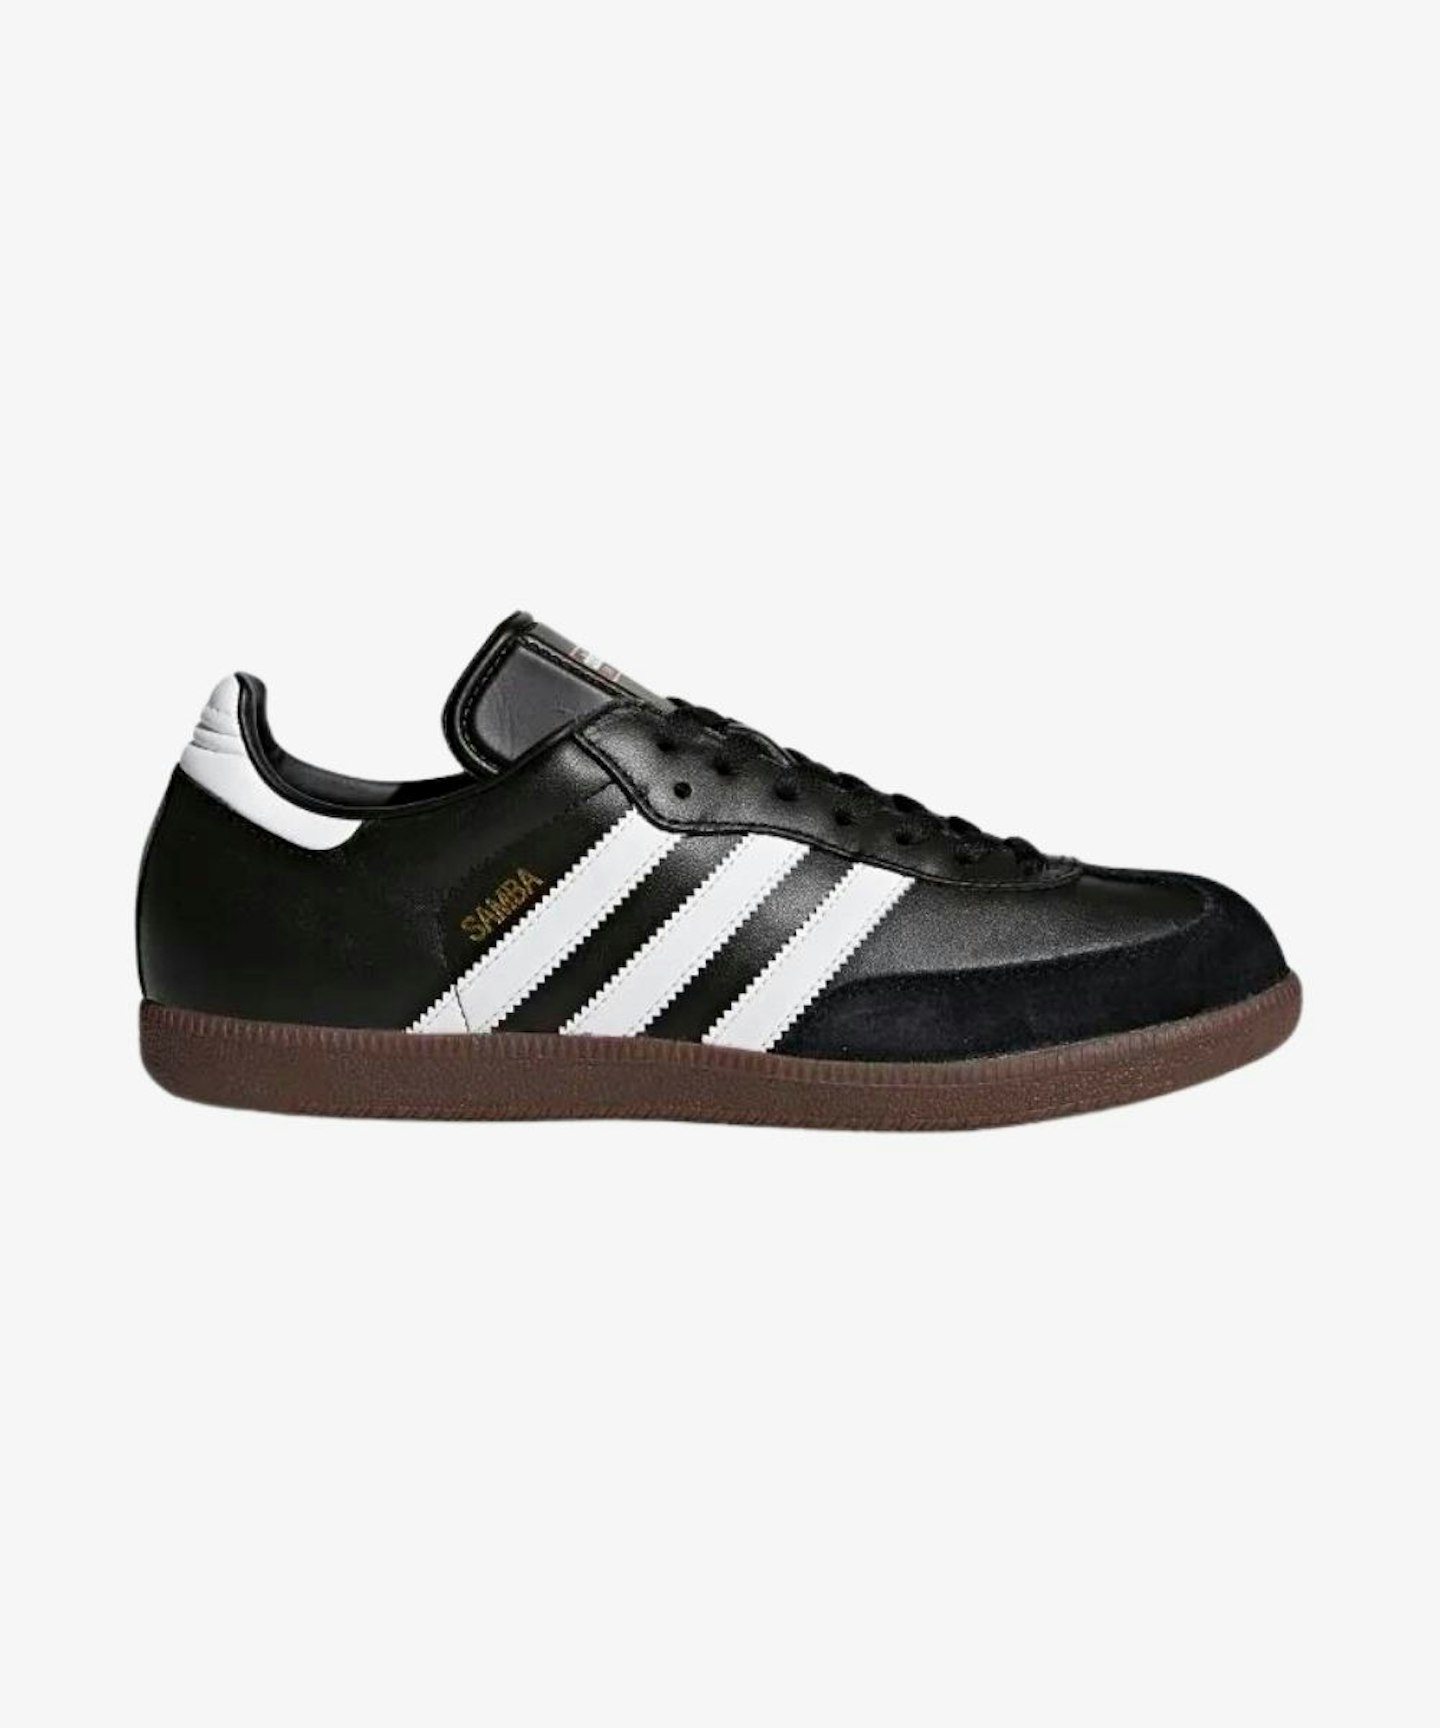 Adidas Samba Leather Shoes, £65